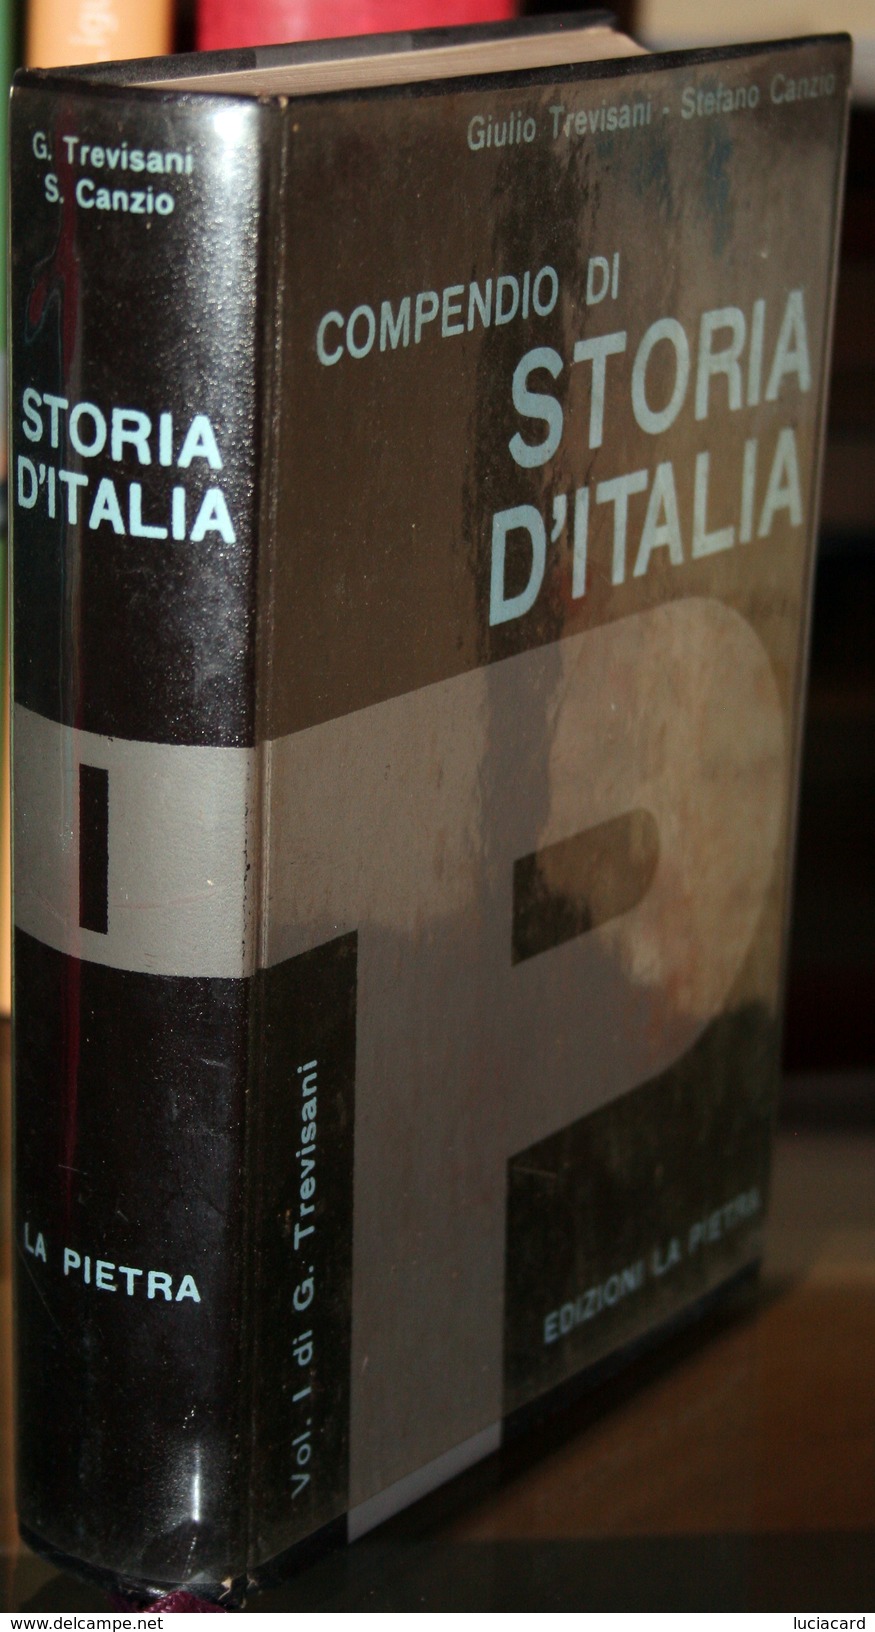 LIBRO -COMPENDIO DI STORIA D'ITALIA -VOLUME 1 DI G. TREVISANI -EDIZIONI LA PIETRA - Geschichte